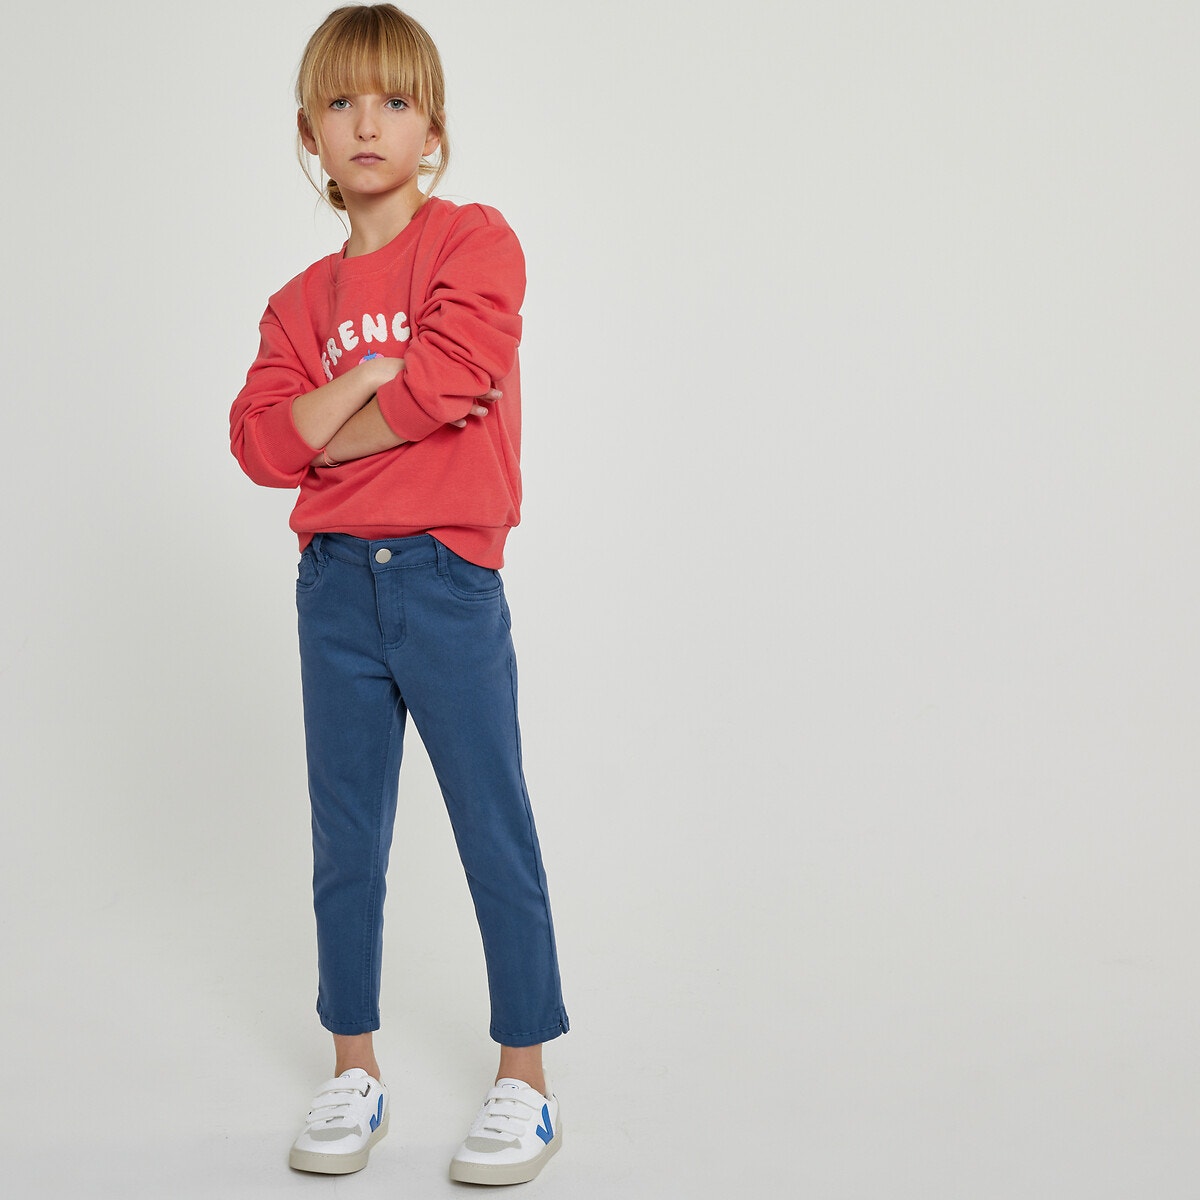 ΠΑΙΔΙ | Παντελόνια Slim κάπρι, 3-12 ετών